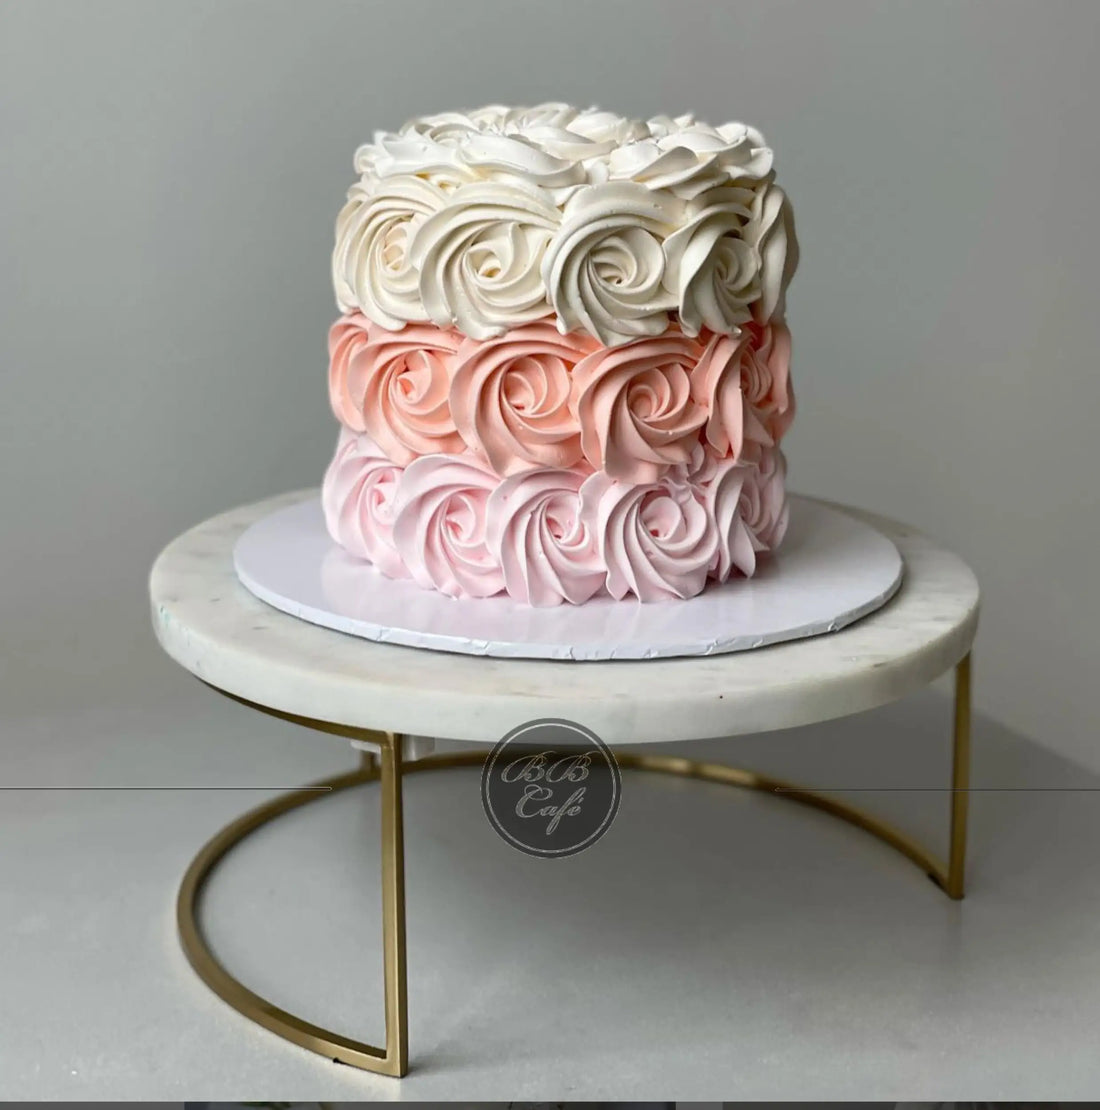 Rosettes on whipped cream - custom cake